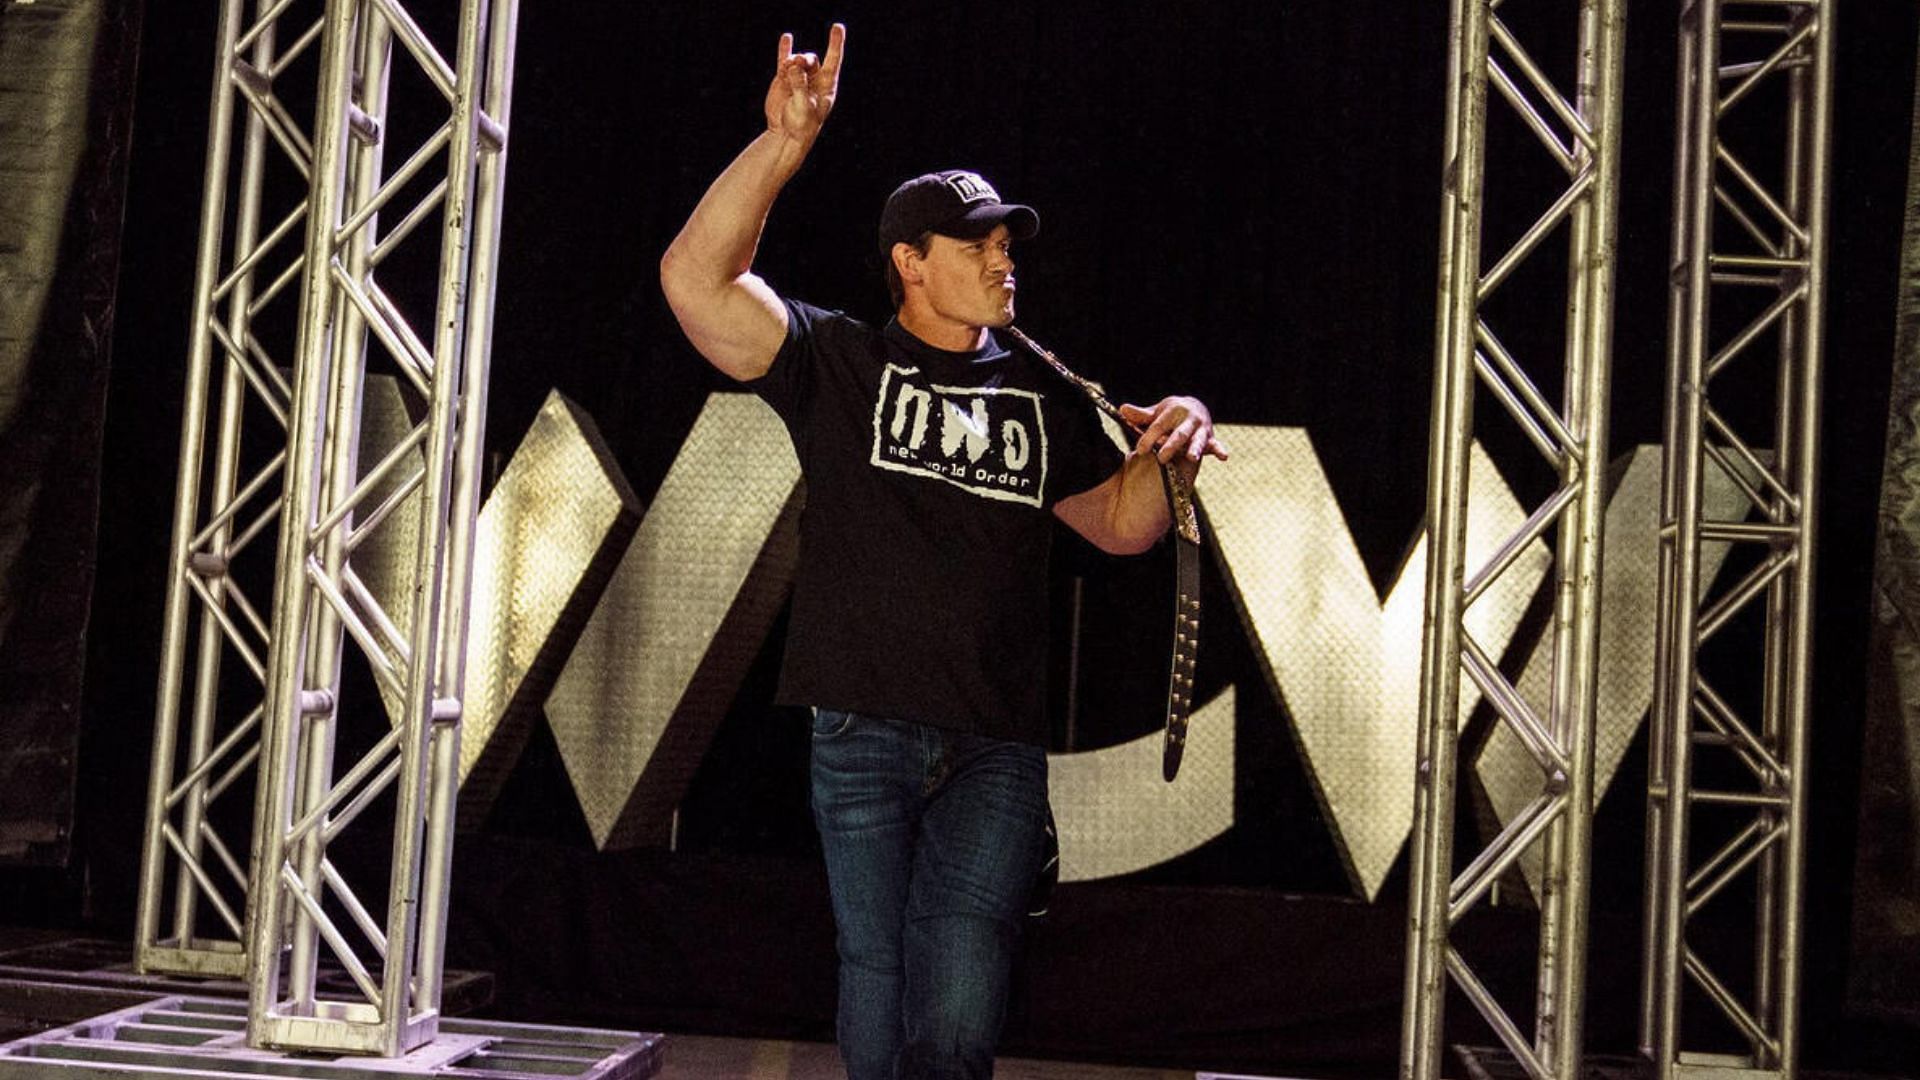 John Cena at WrestleMania 36 against Bray Wyatt!